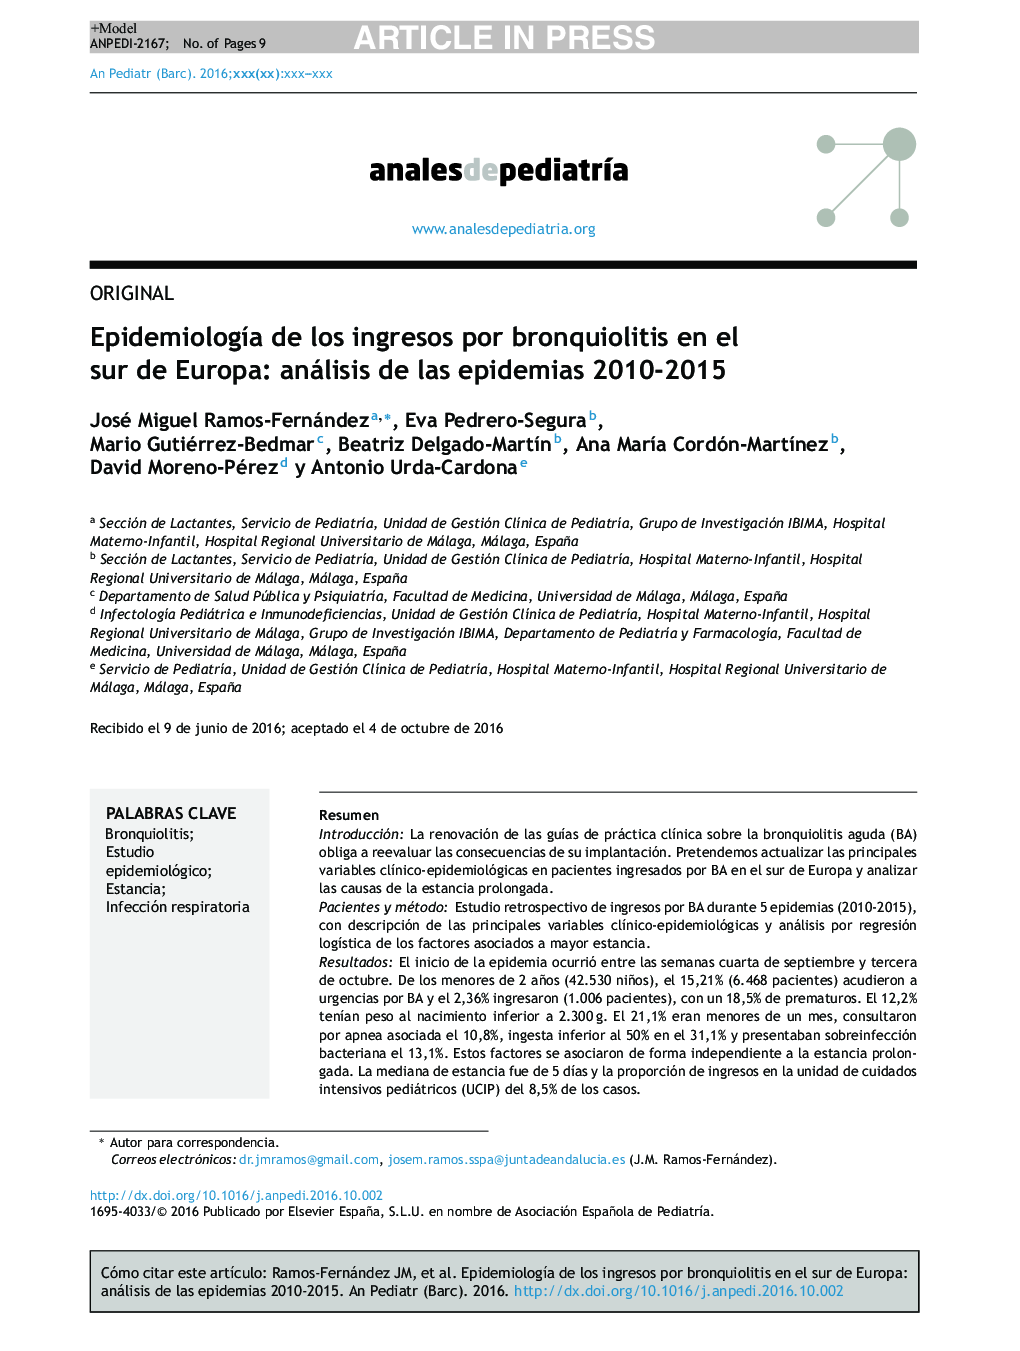 EpidemiologÃ­a de los ingresos por bronquiolitis en el sur de Europa: análisis de las epidemias 2010-2015